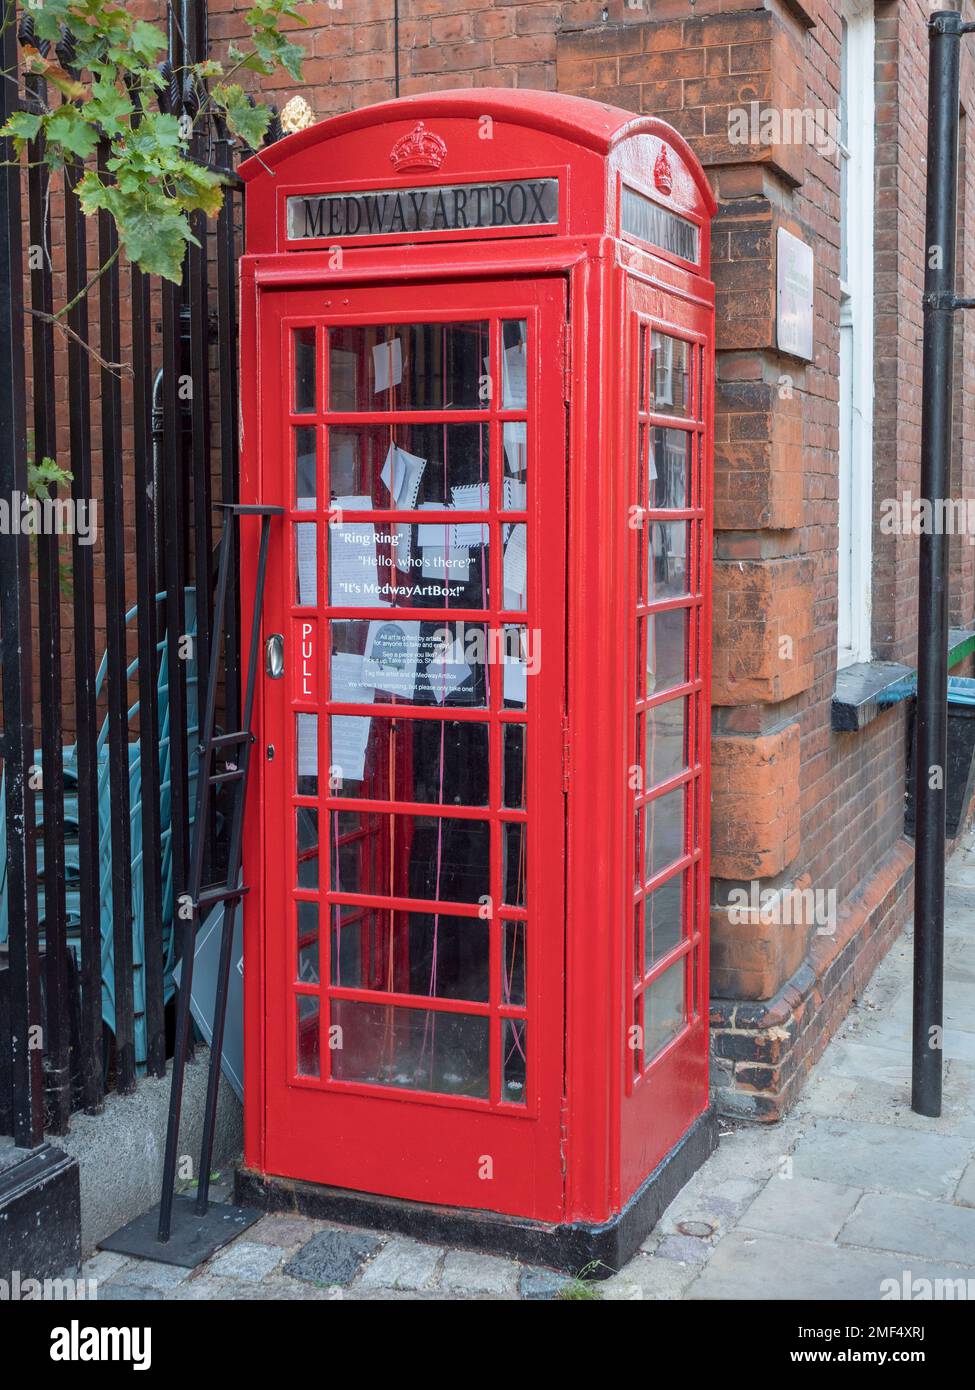 Une boîte téléphonique à l'ancienne transformée en boîte d'art Medway dans le centre historique de Rochester, dans le Kent, au Royaume-Uni. Banque D'Images